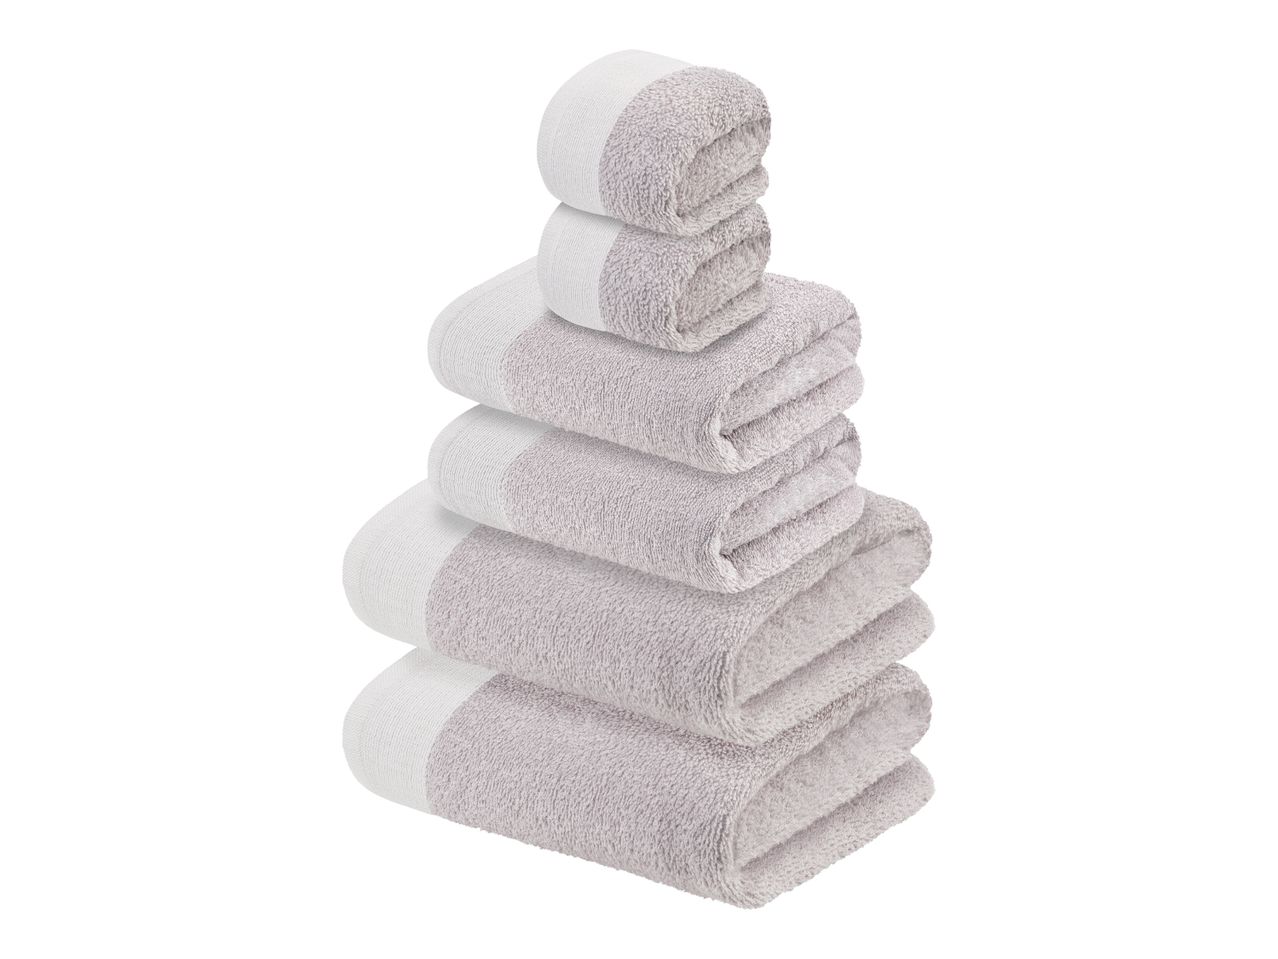 Set asciugamani , prezzo 12.99 EUR 
Set asciugamani 6 pezzi 
- Puro cotone
Comprende:
- ...